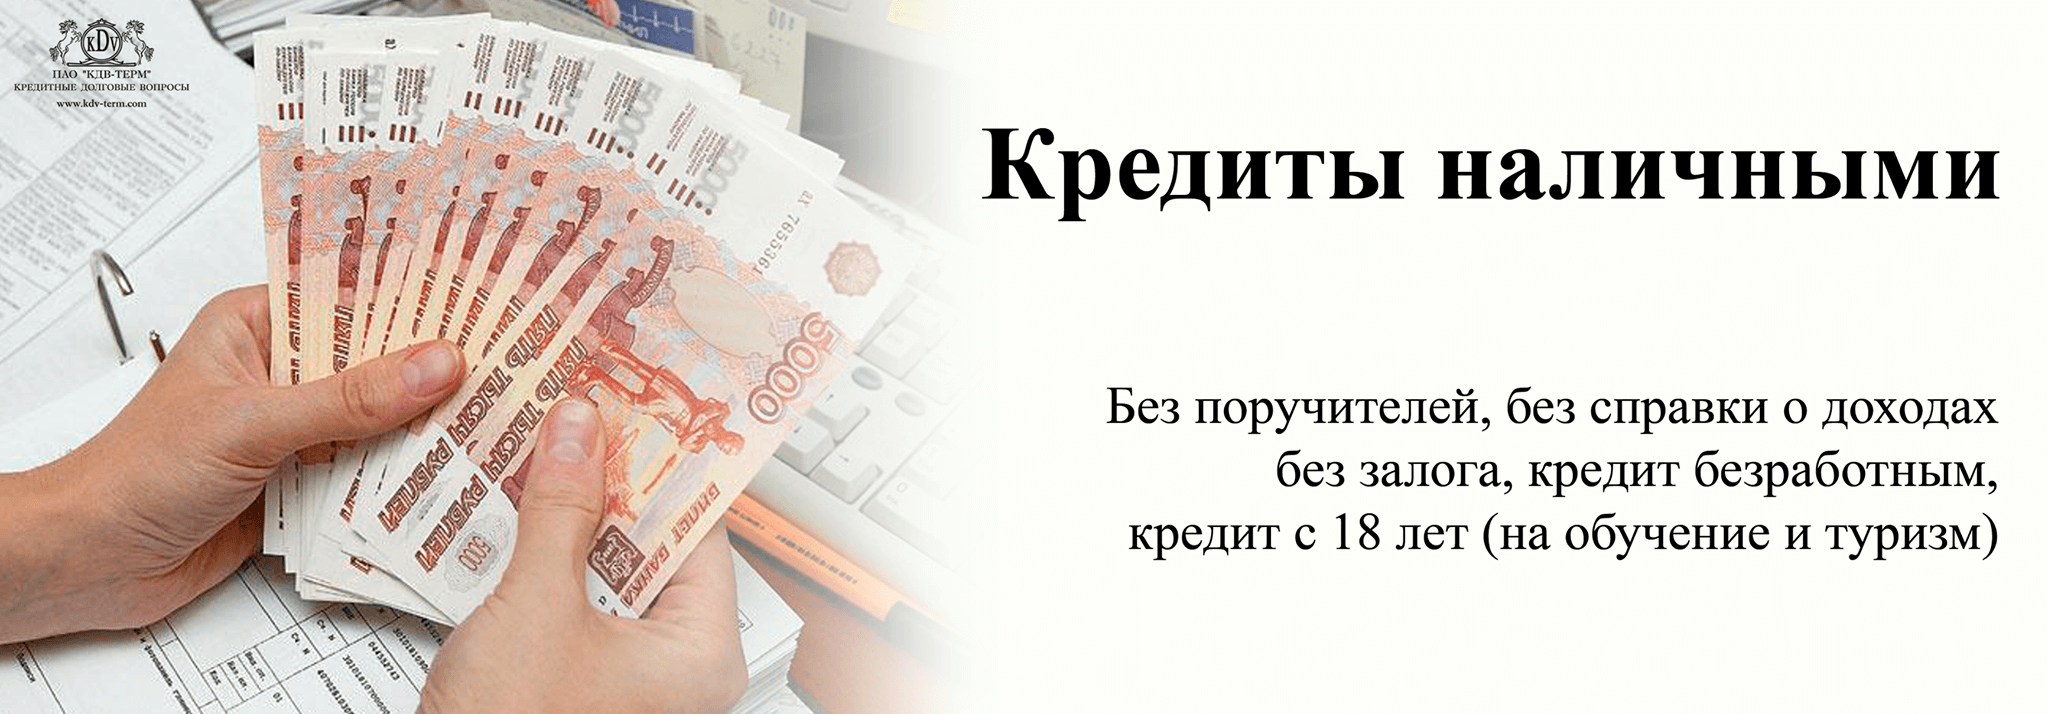 Займы наличными в Пятигорске в день обращения студентам с 18 лет